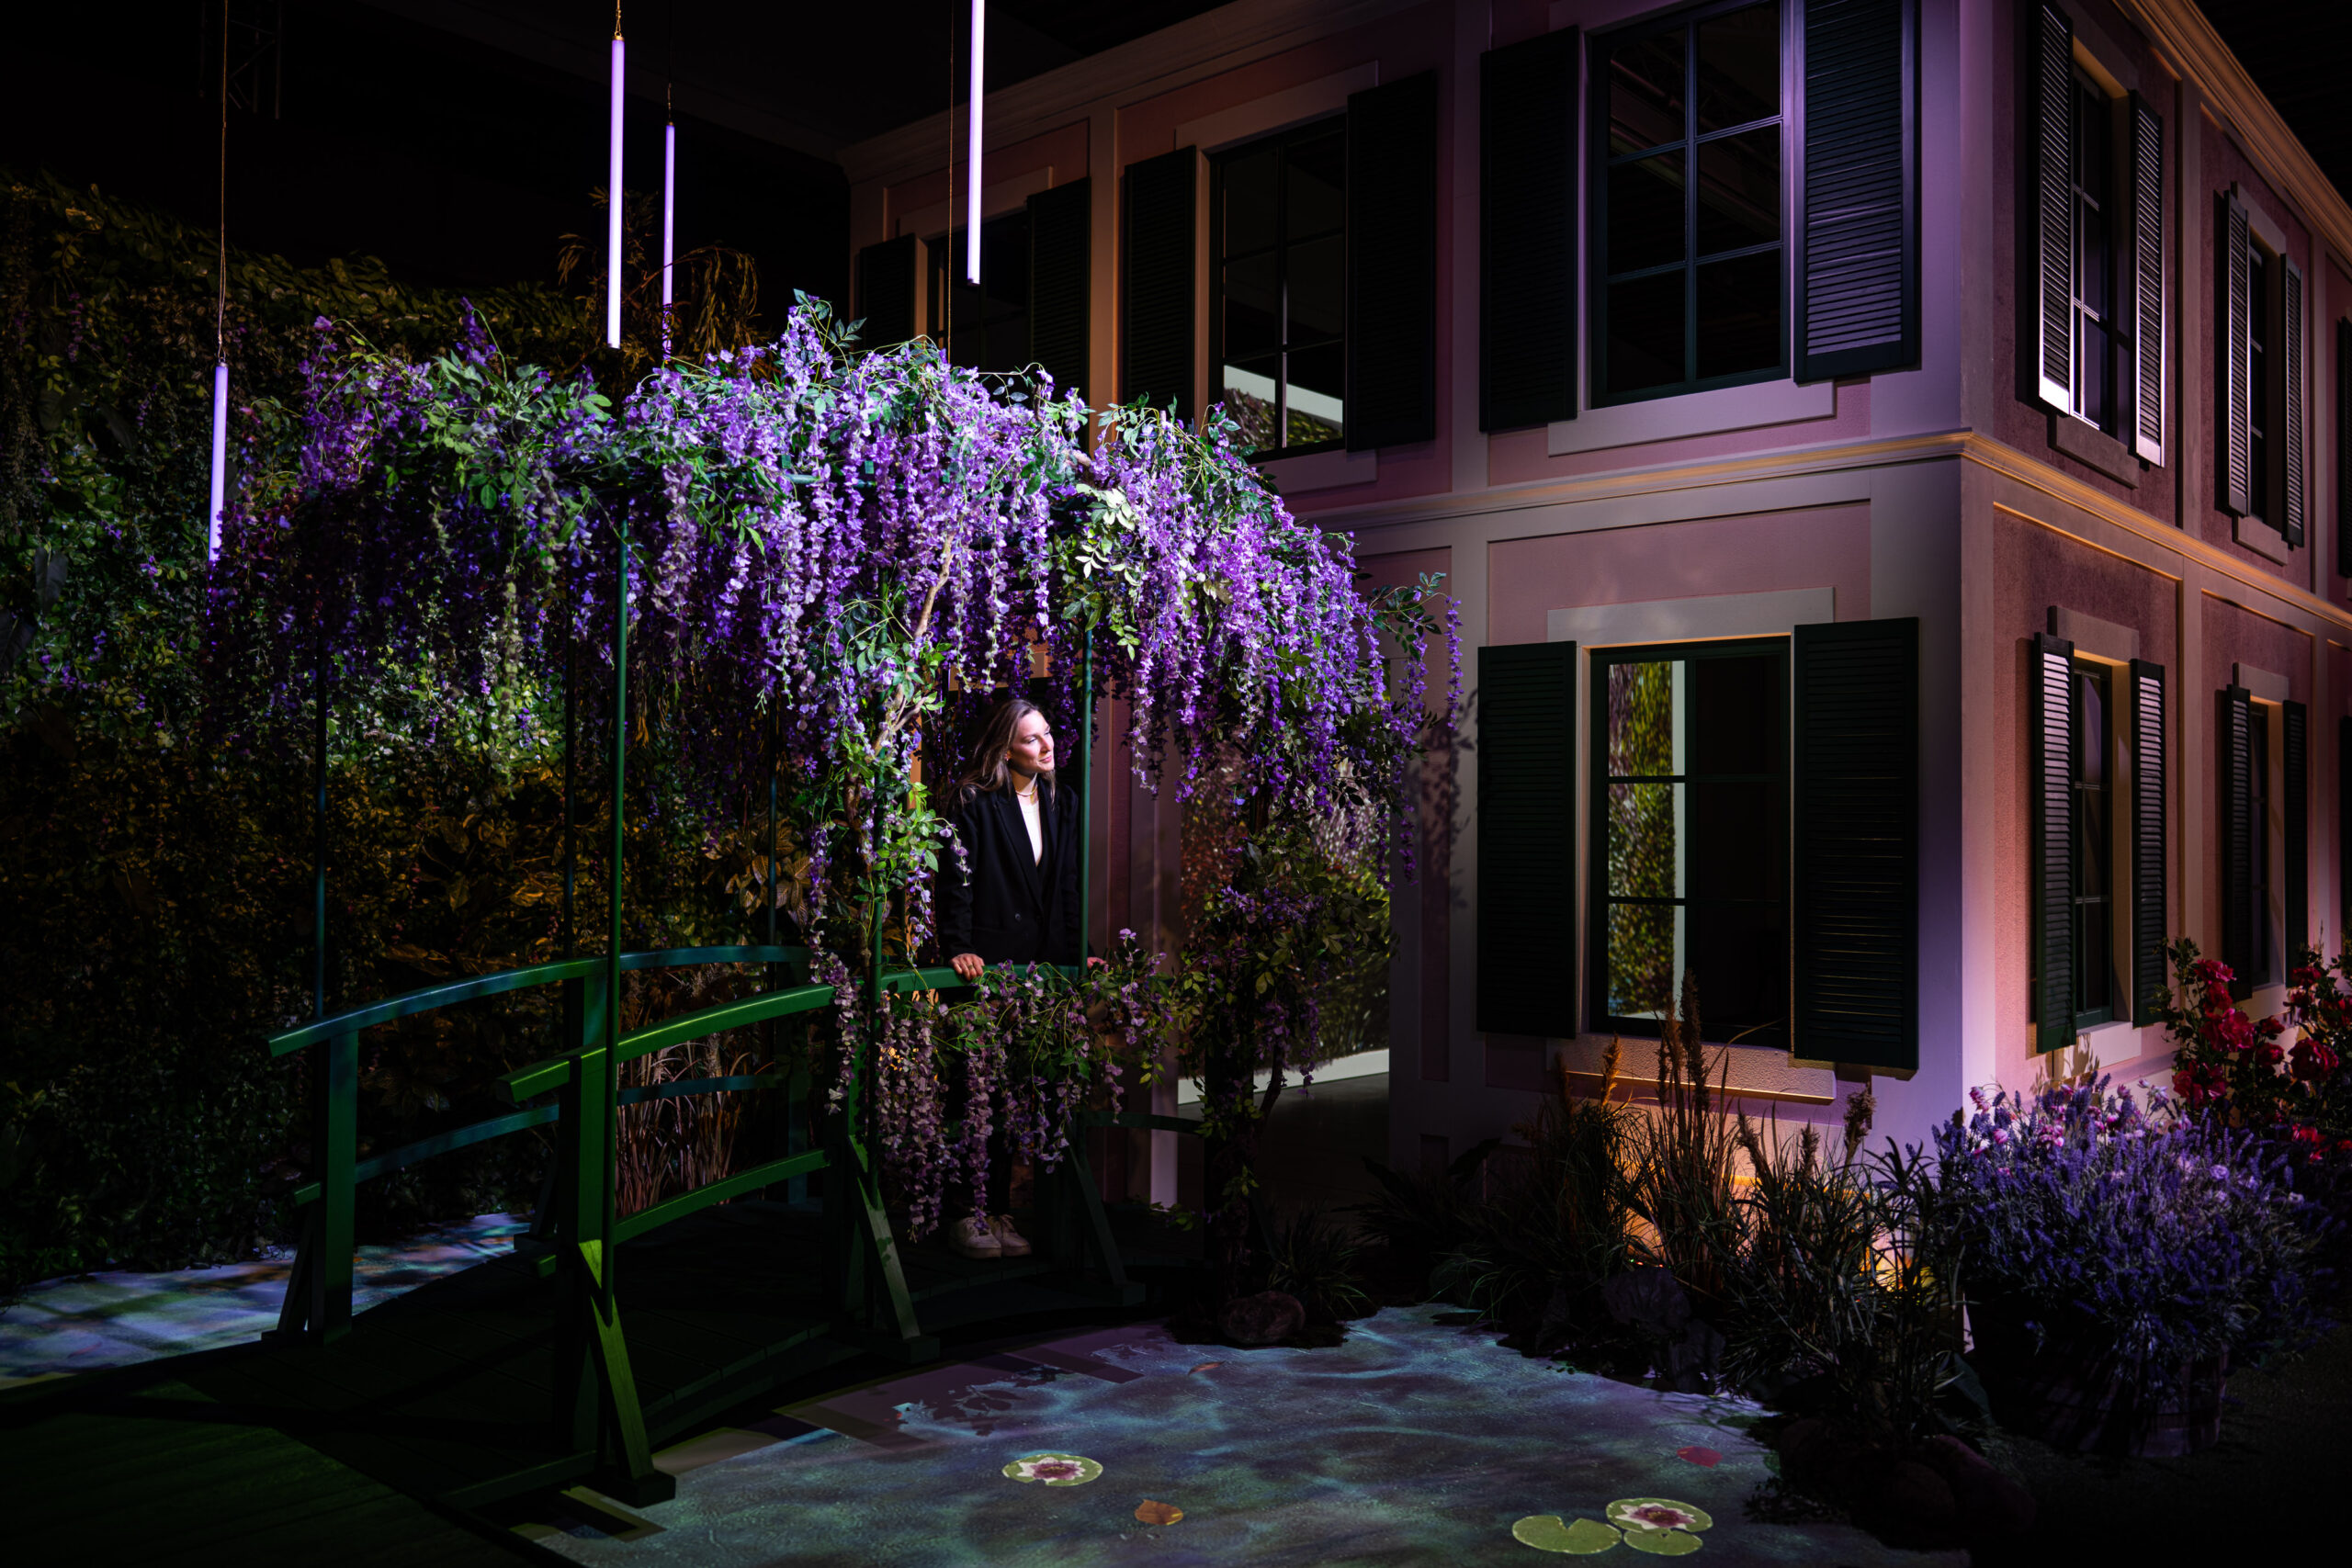 Ausstellungsraum, in dem ein Haus steht, davor eine Frau auf einer mit Blumen bewachsenen Brücke